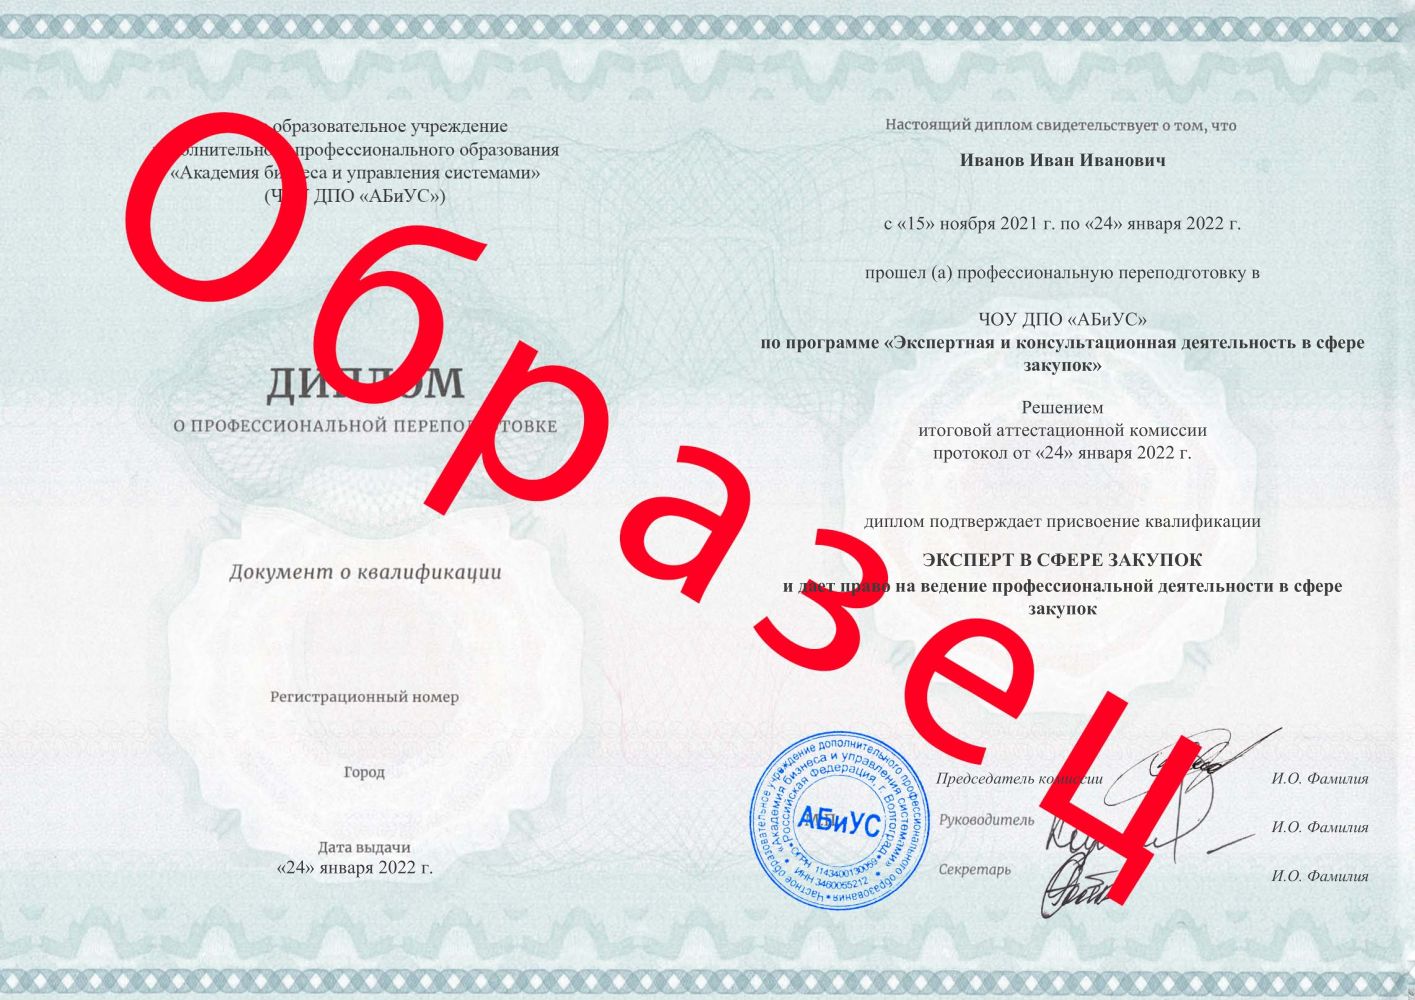 Диплом Экспертная и консультационная деятельность в сфере закупок 260 часов 15750 руб.